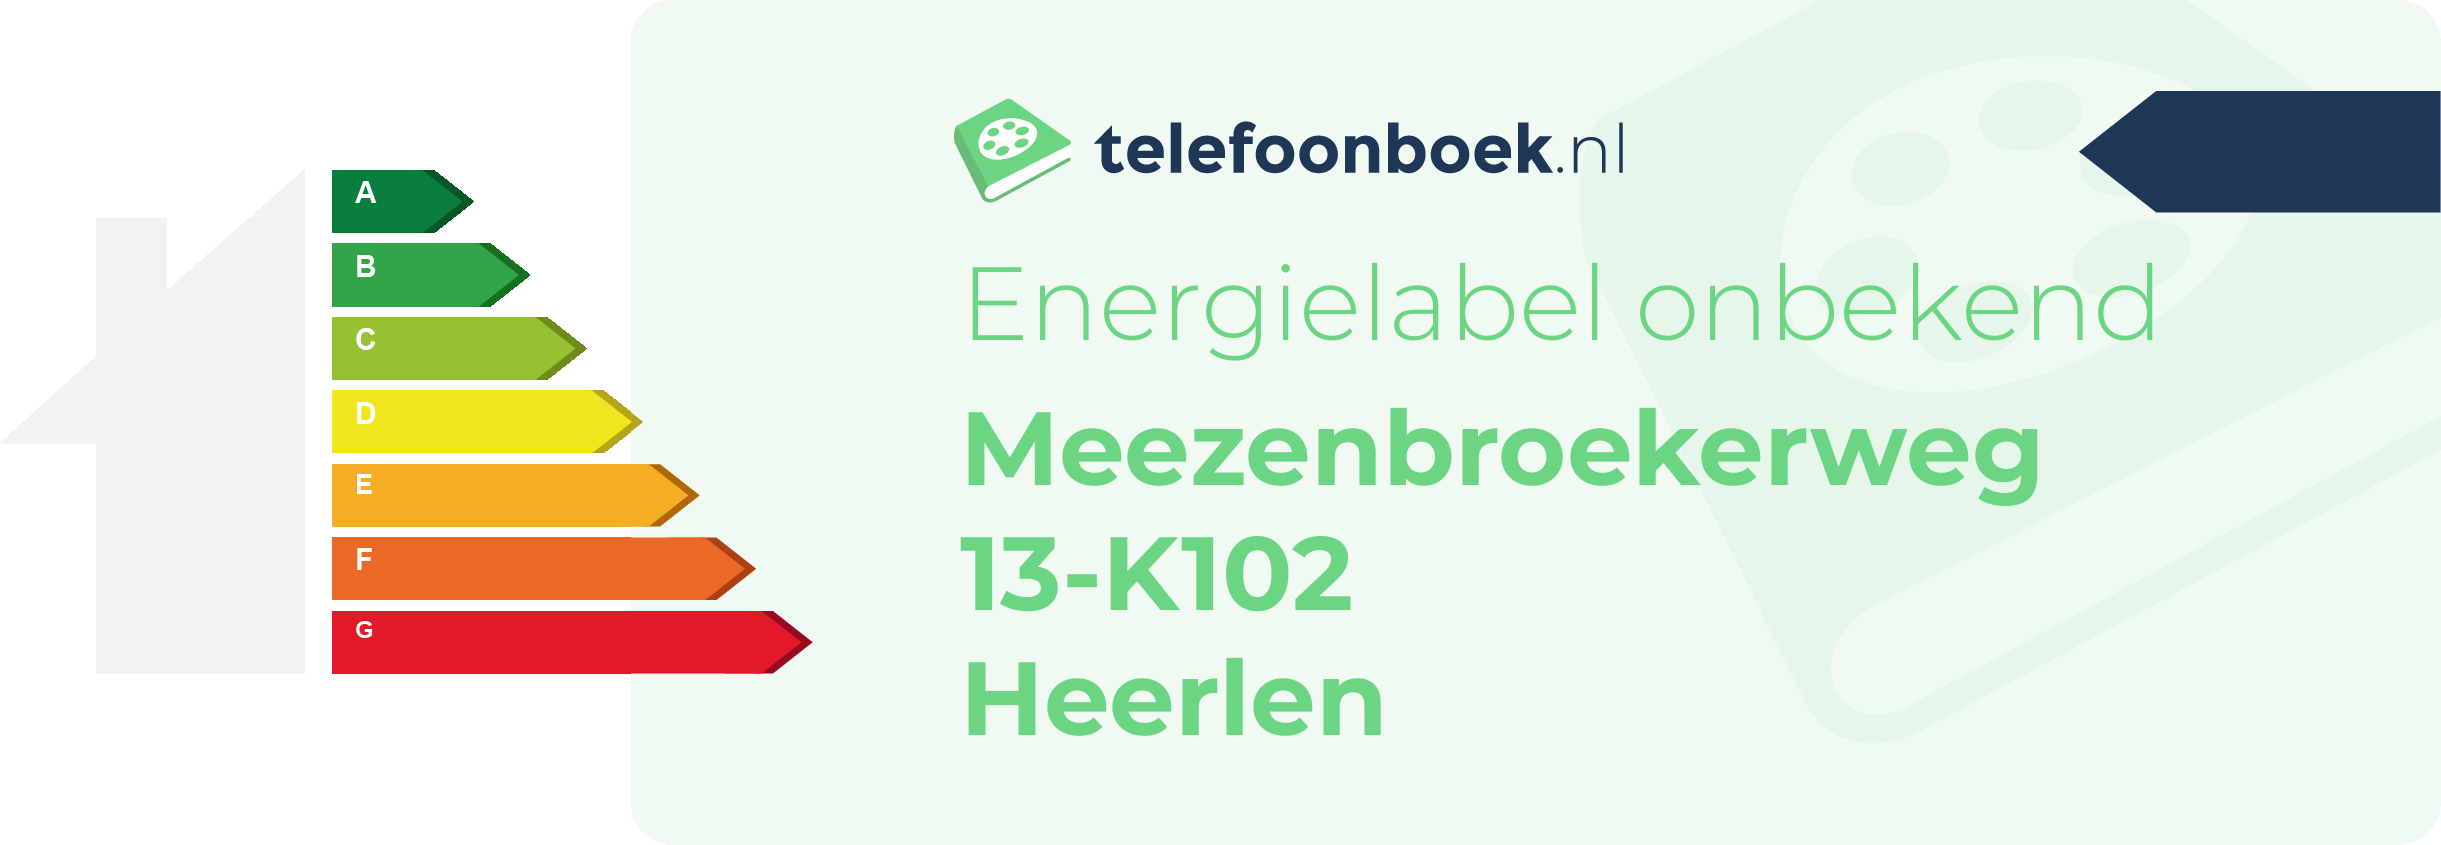 Energielabel Meezenbroekerweg 13-K102 Heerlen